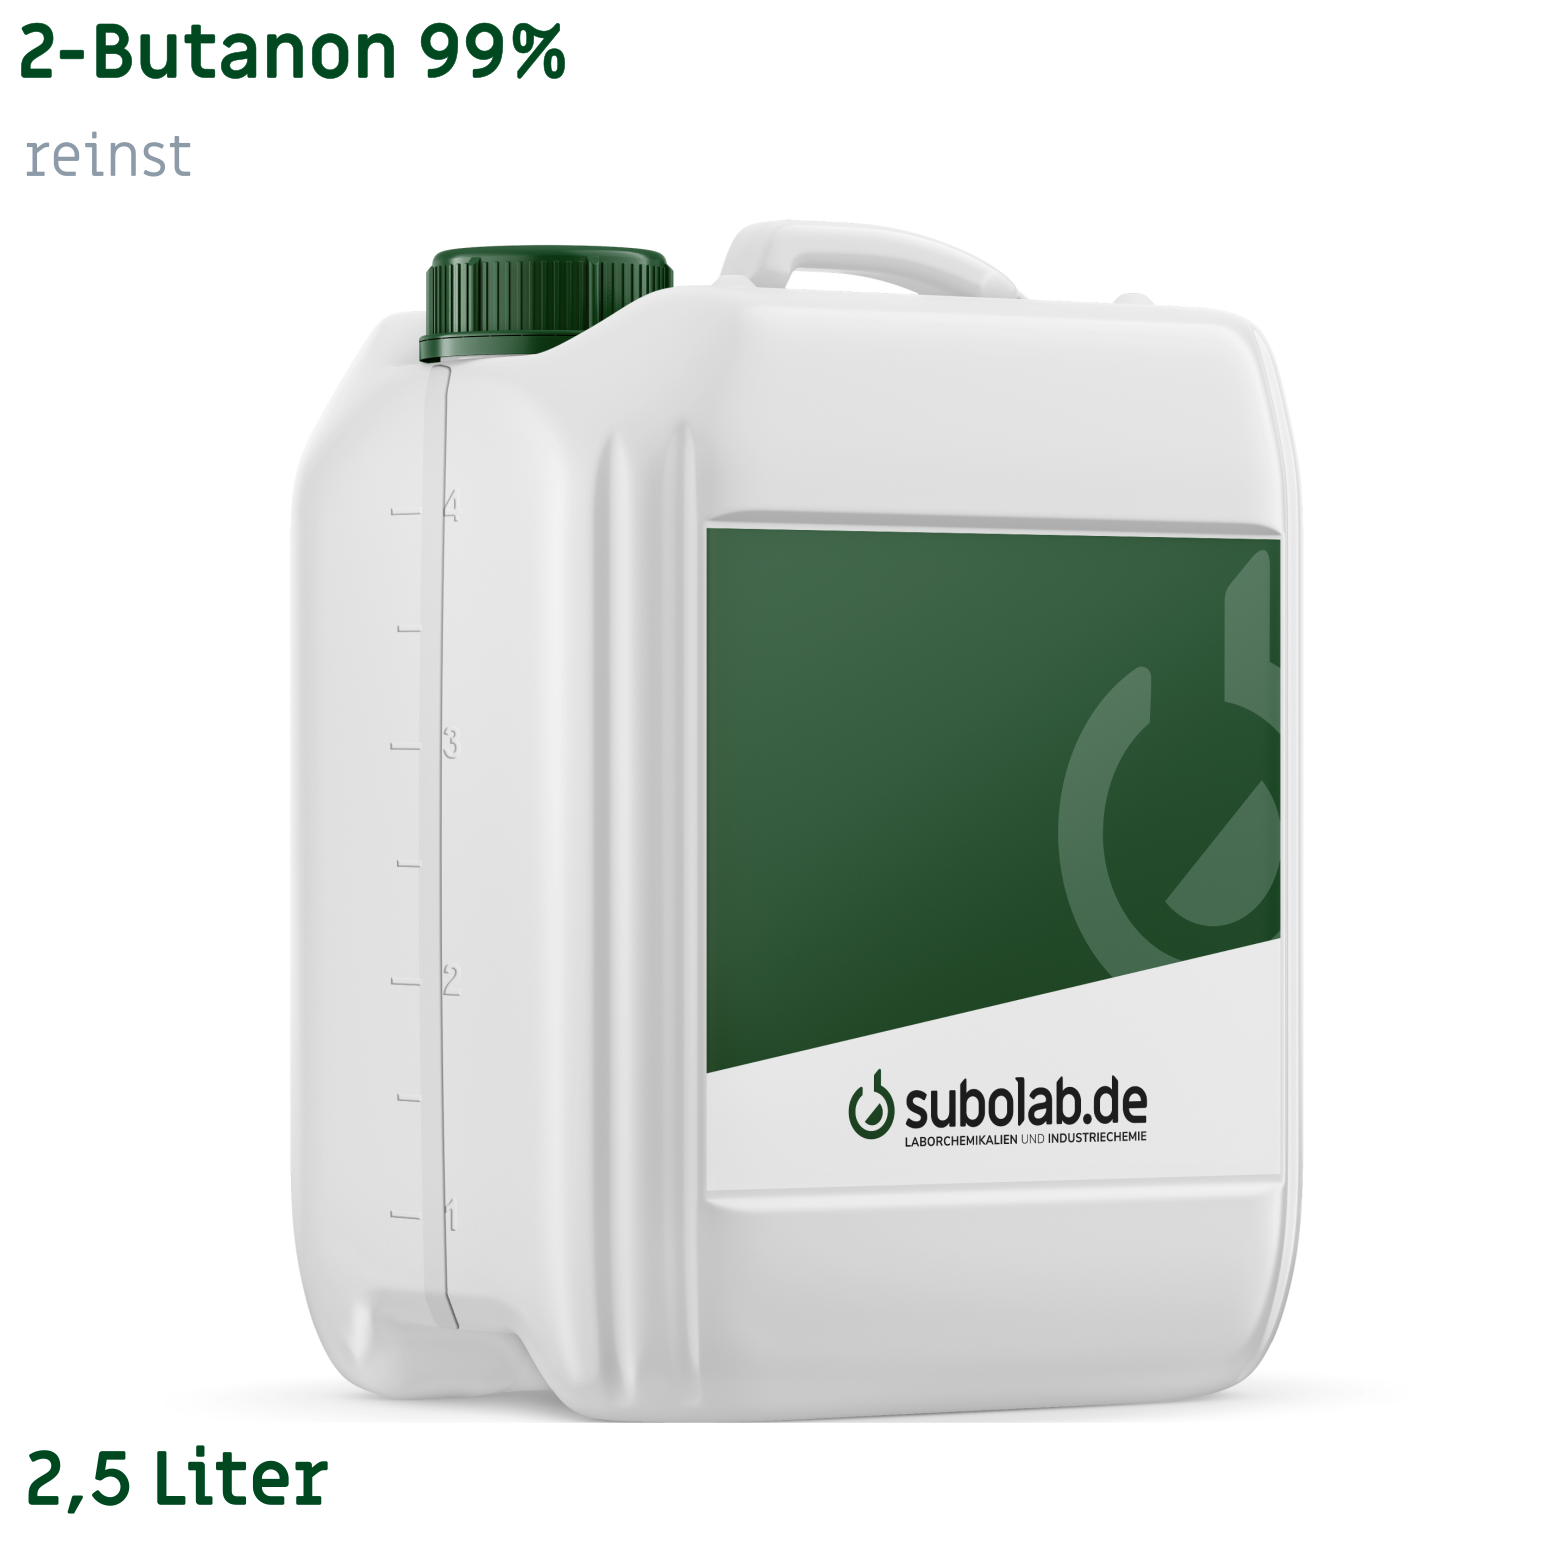 Bild von 2-Butanon 99% reinst (2,5 Liter)